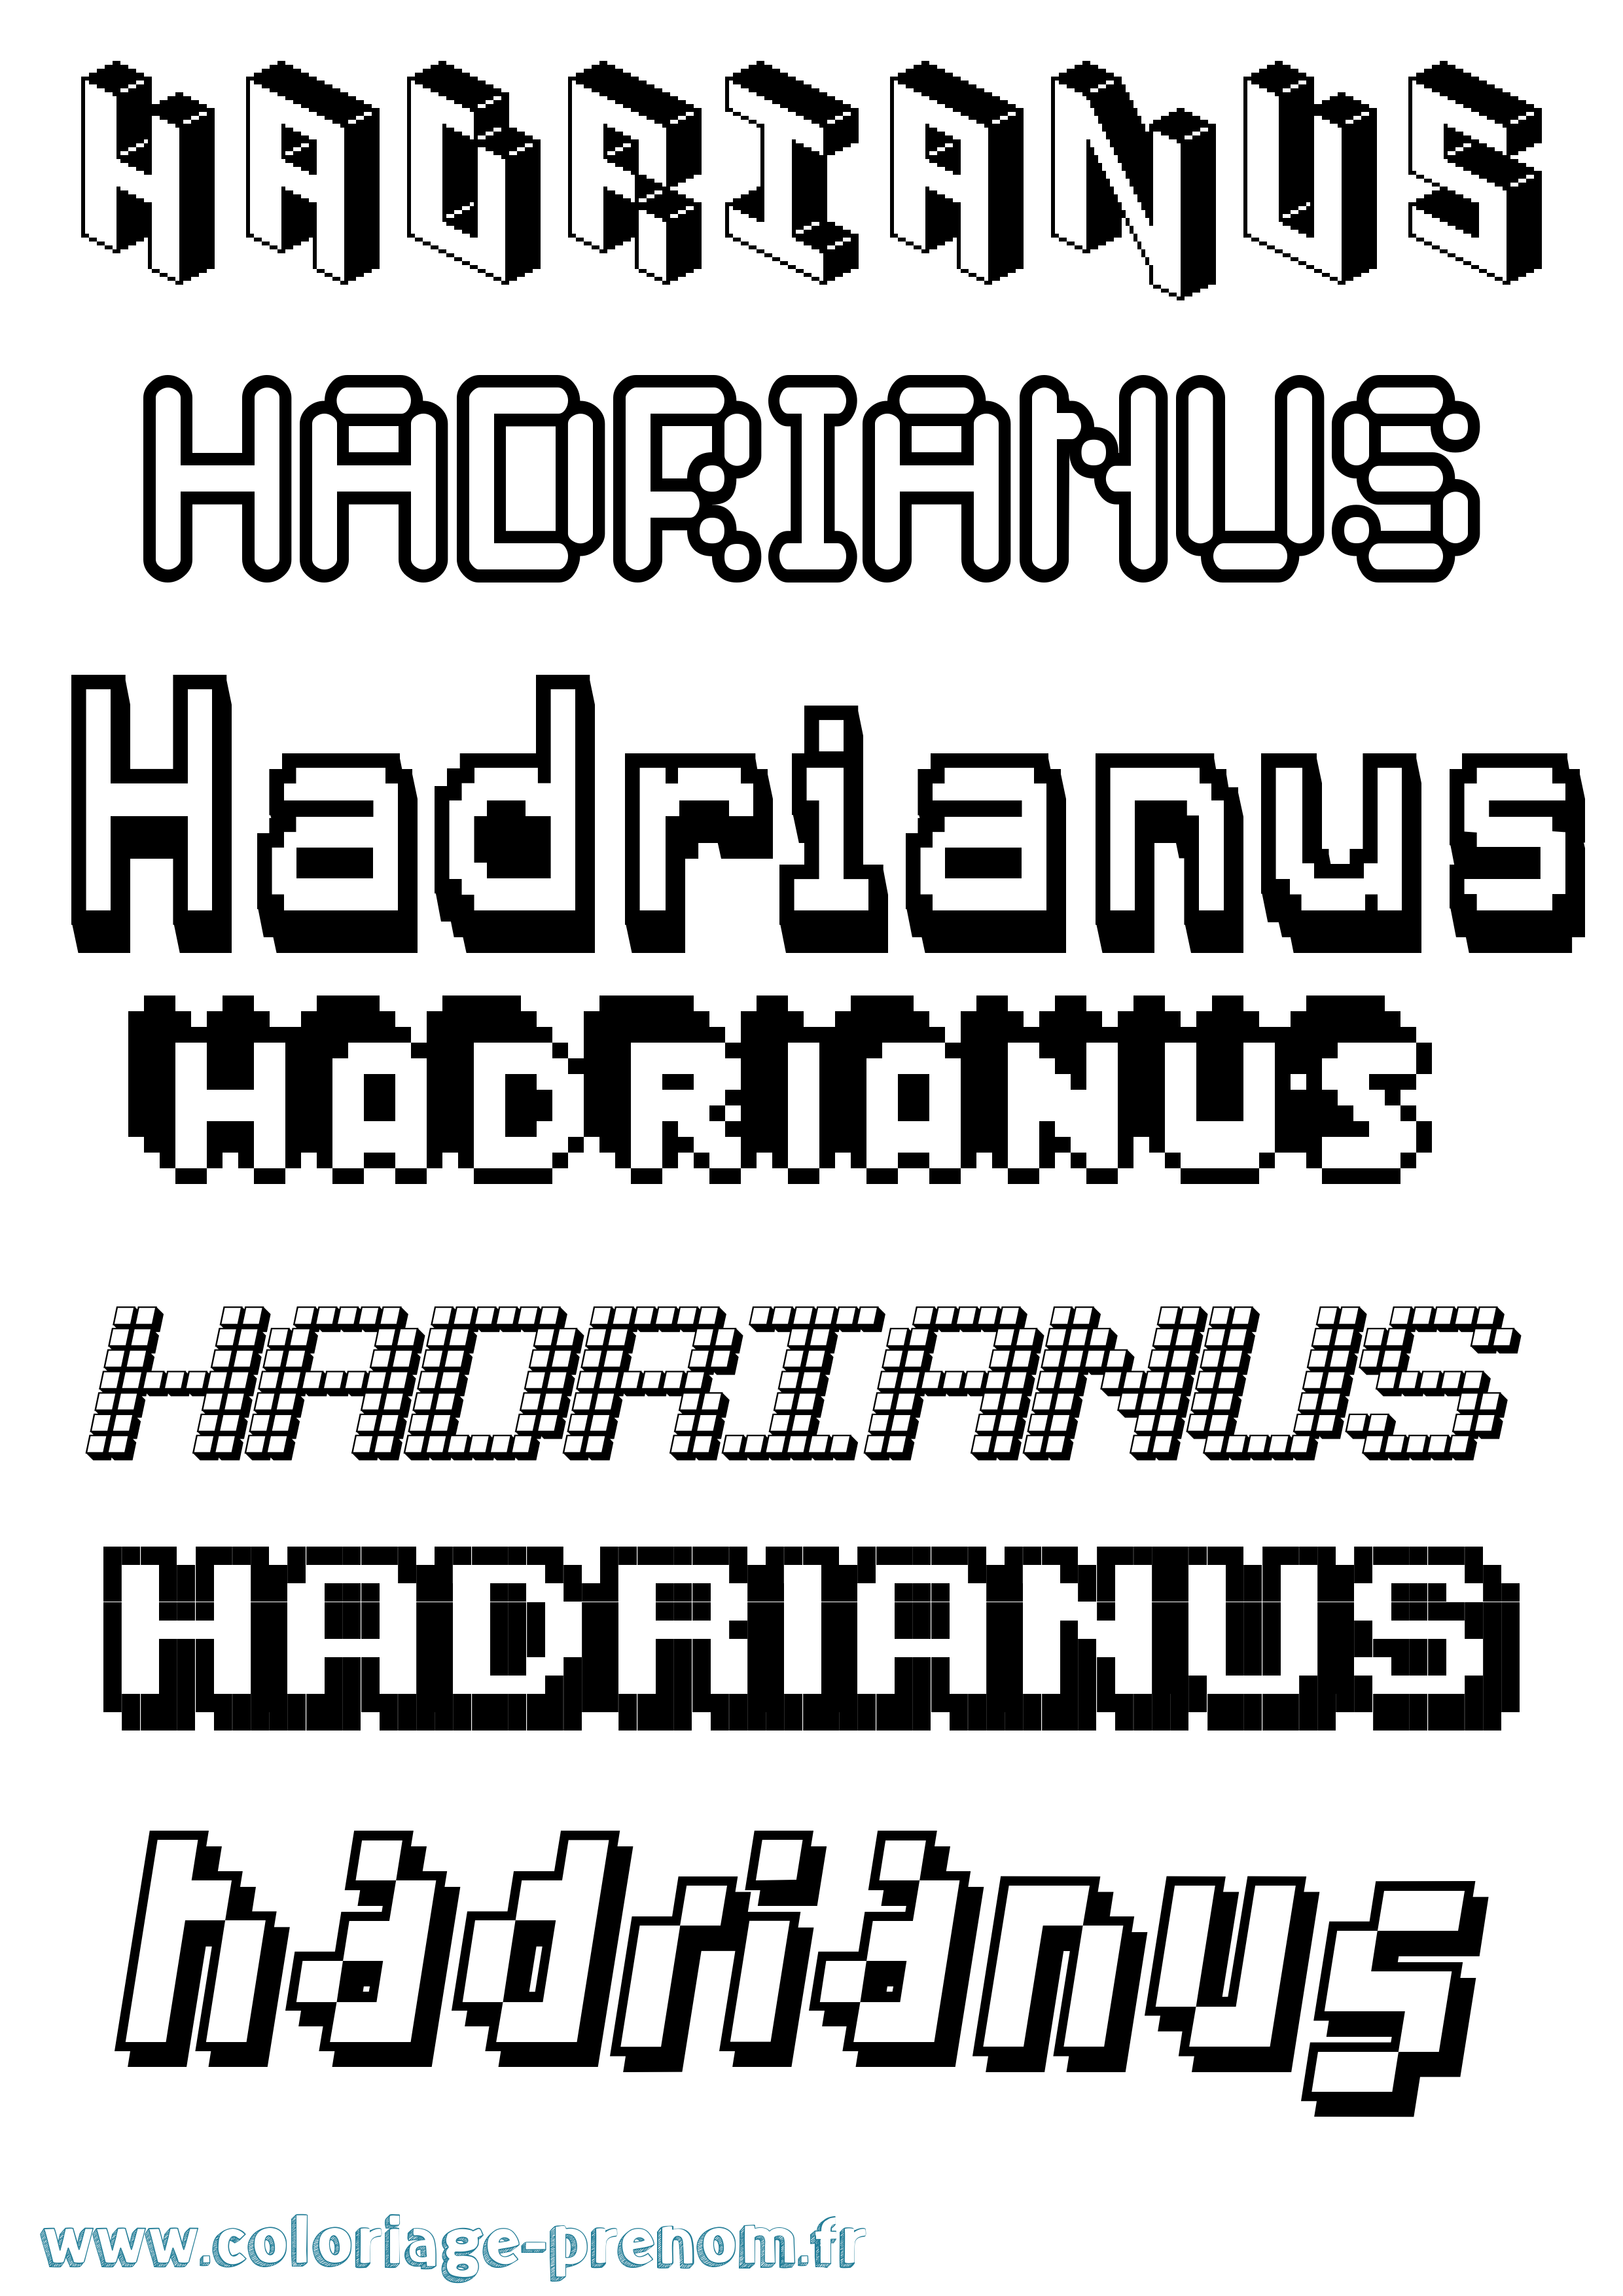 Coloriage prénom Hadrianus Pixel